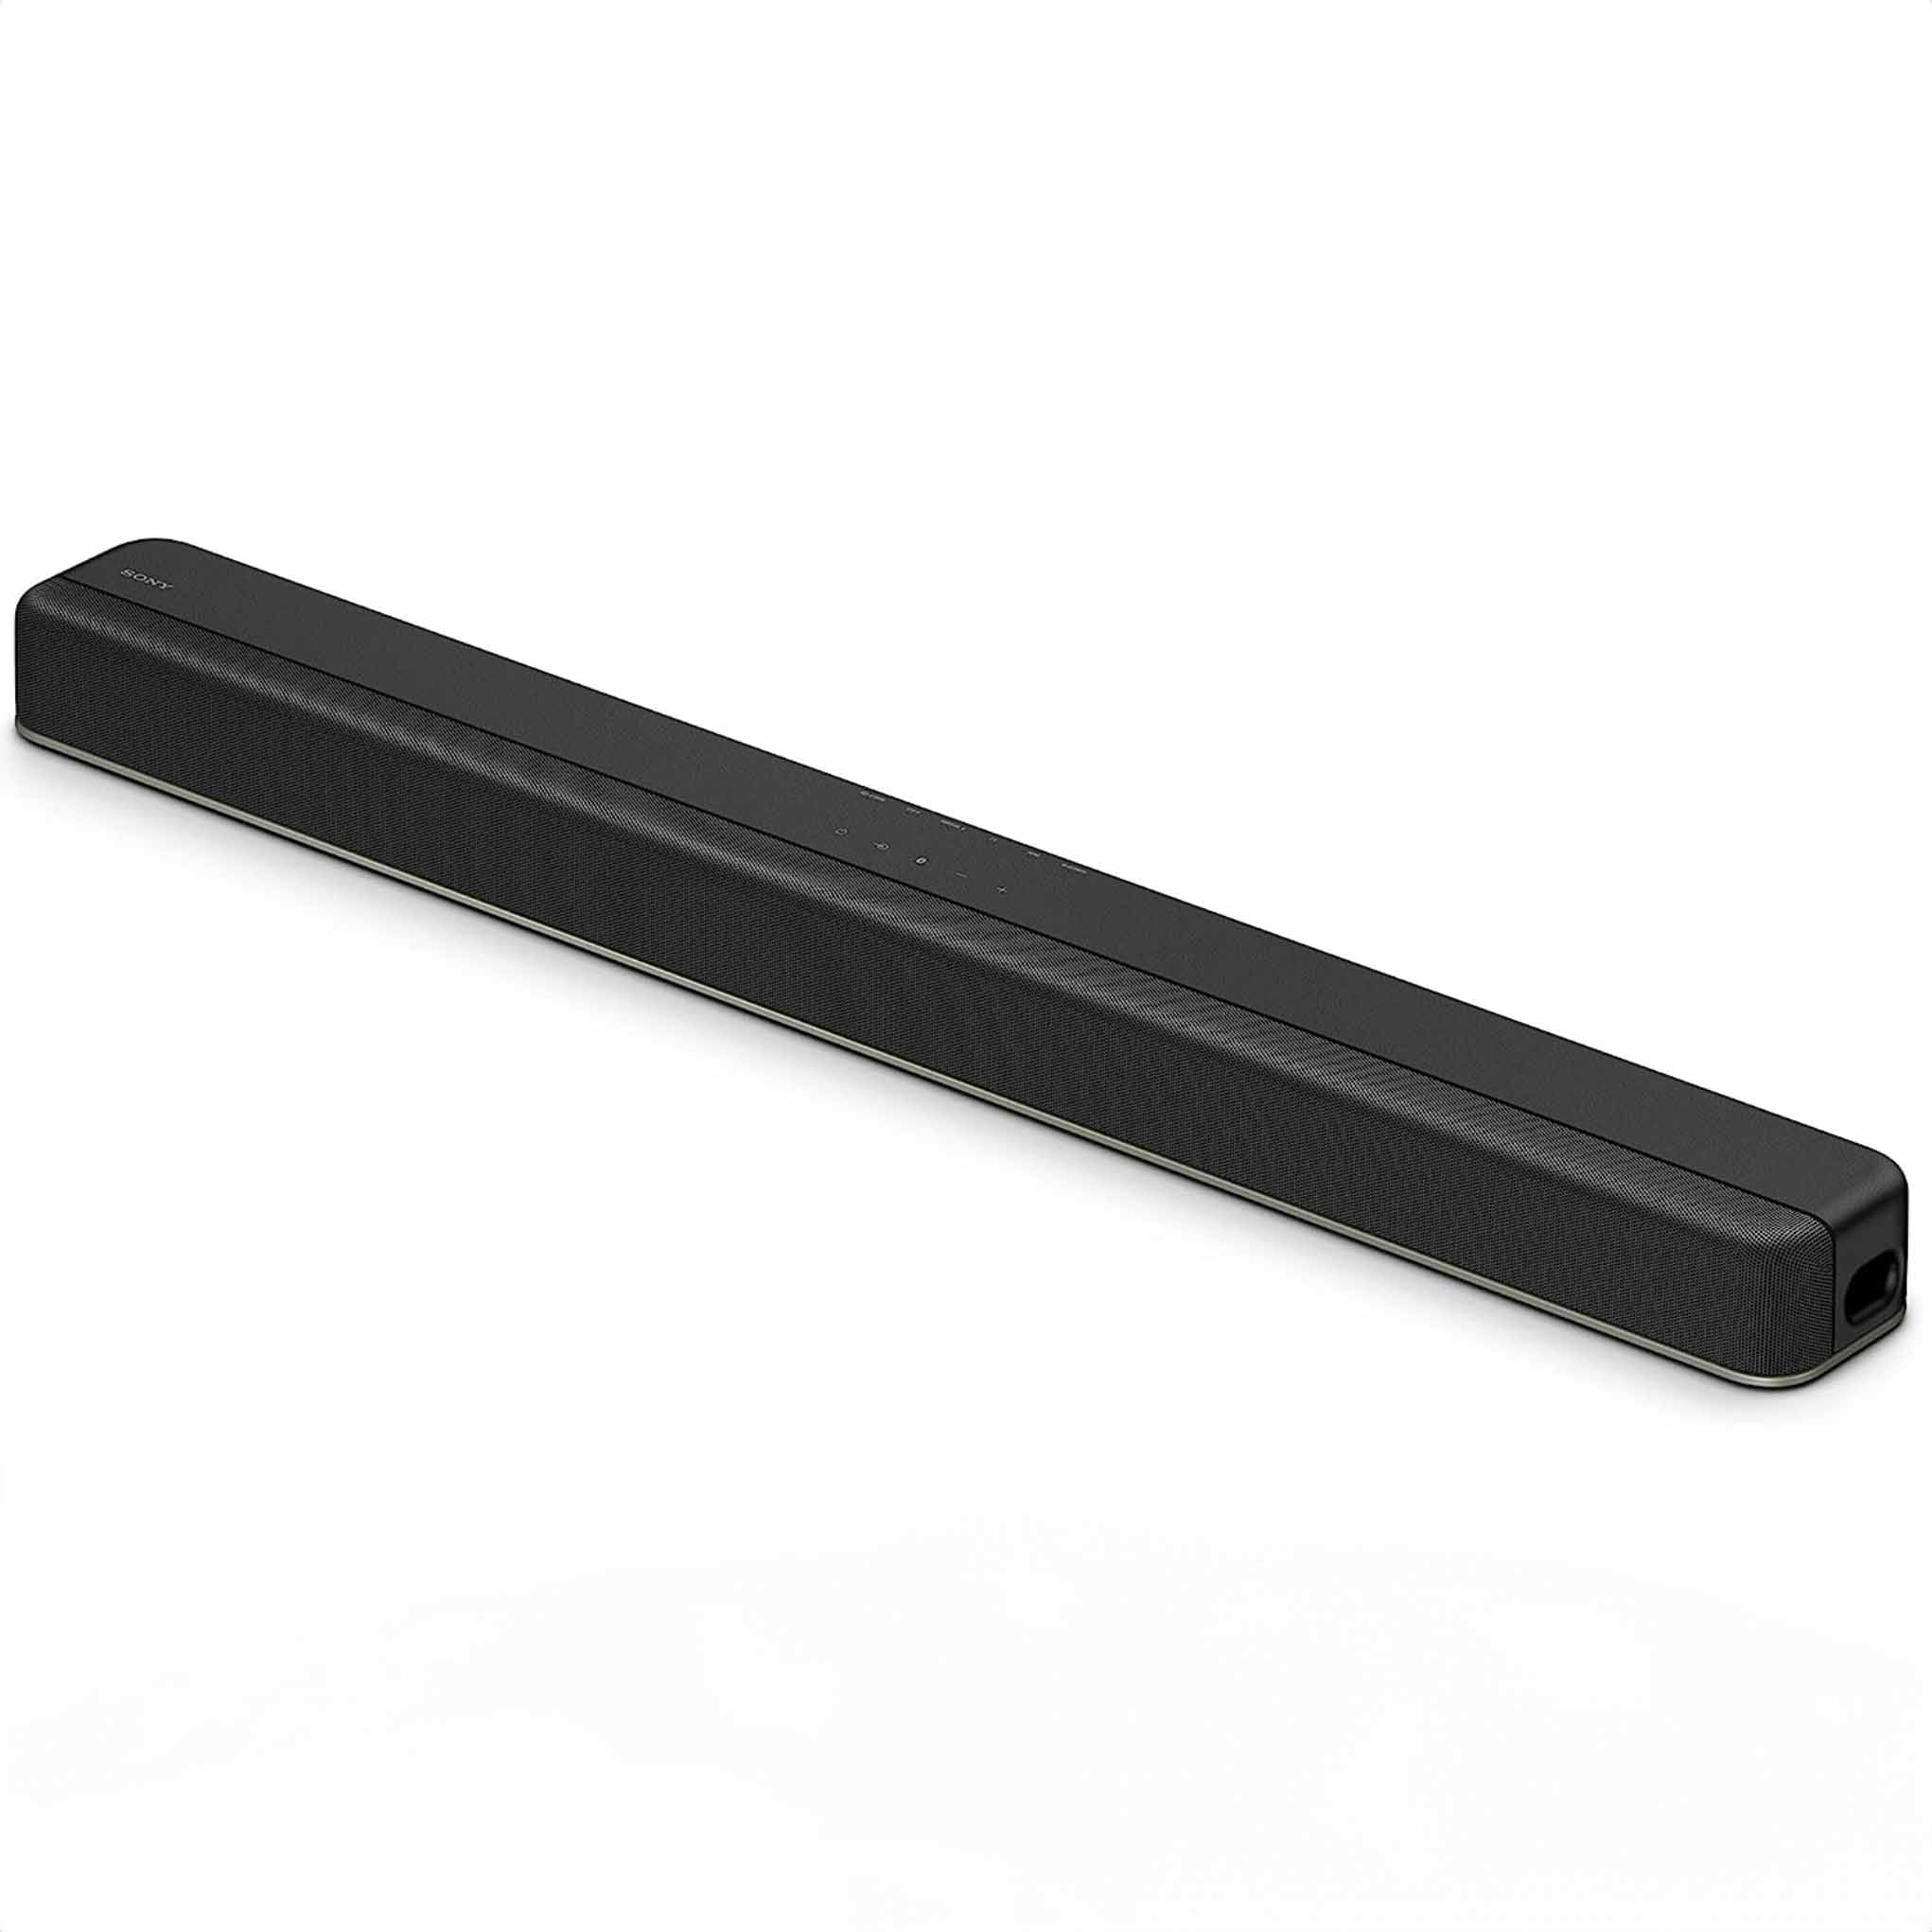 Sony soundbar in black